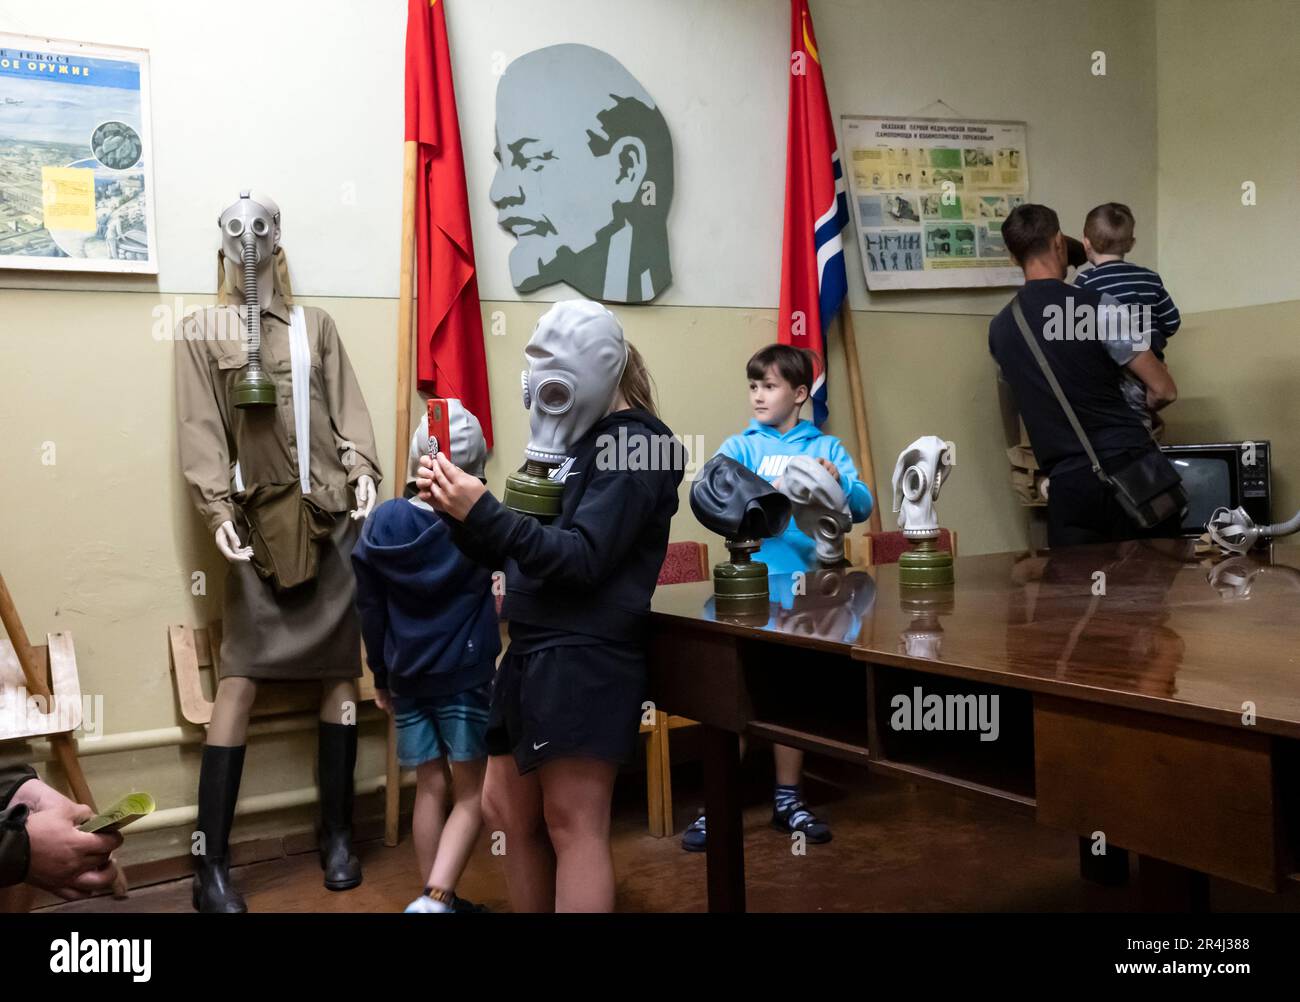 Kinder, die Gasmasken tragen, im geheimen sowjetischen Bunker, Skaļupes, Līgatne, Bezirk Cēsis, Lettland Stockfoto